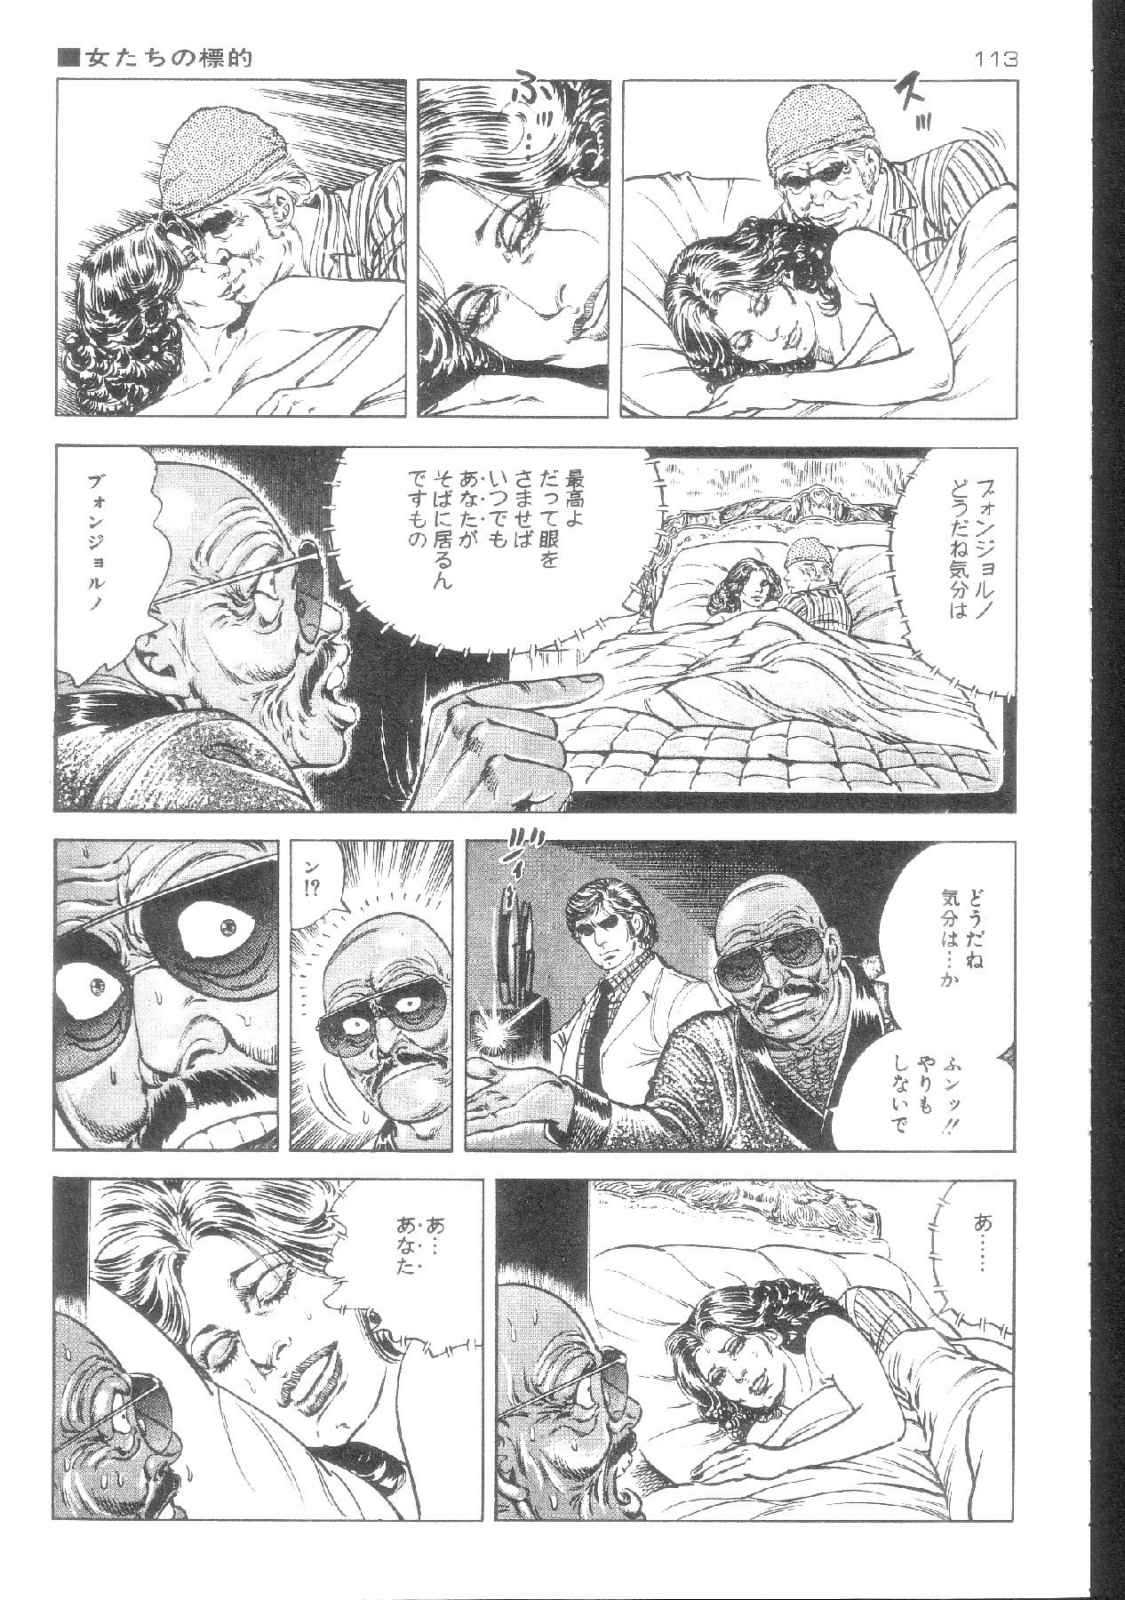 [Kano Seisaku, Koike Kazuo] Jikken Ningyou Dummy Oscar Vol.08 [叶精作, 小池一夫] 実験人形ダミー・オスカー 第08巻